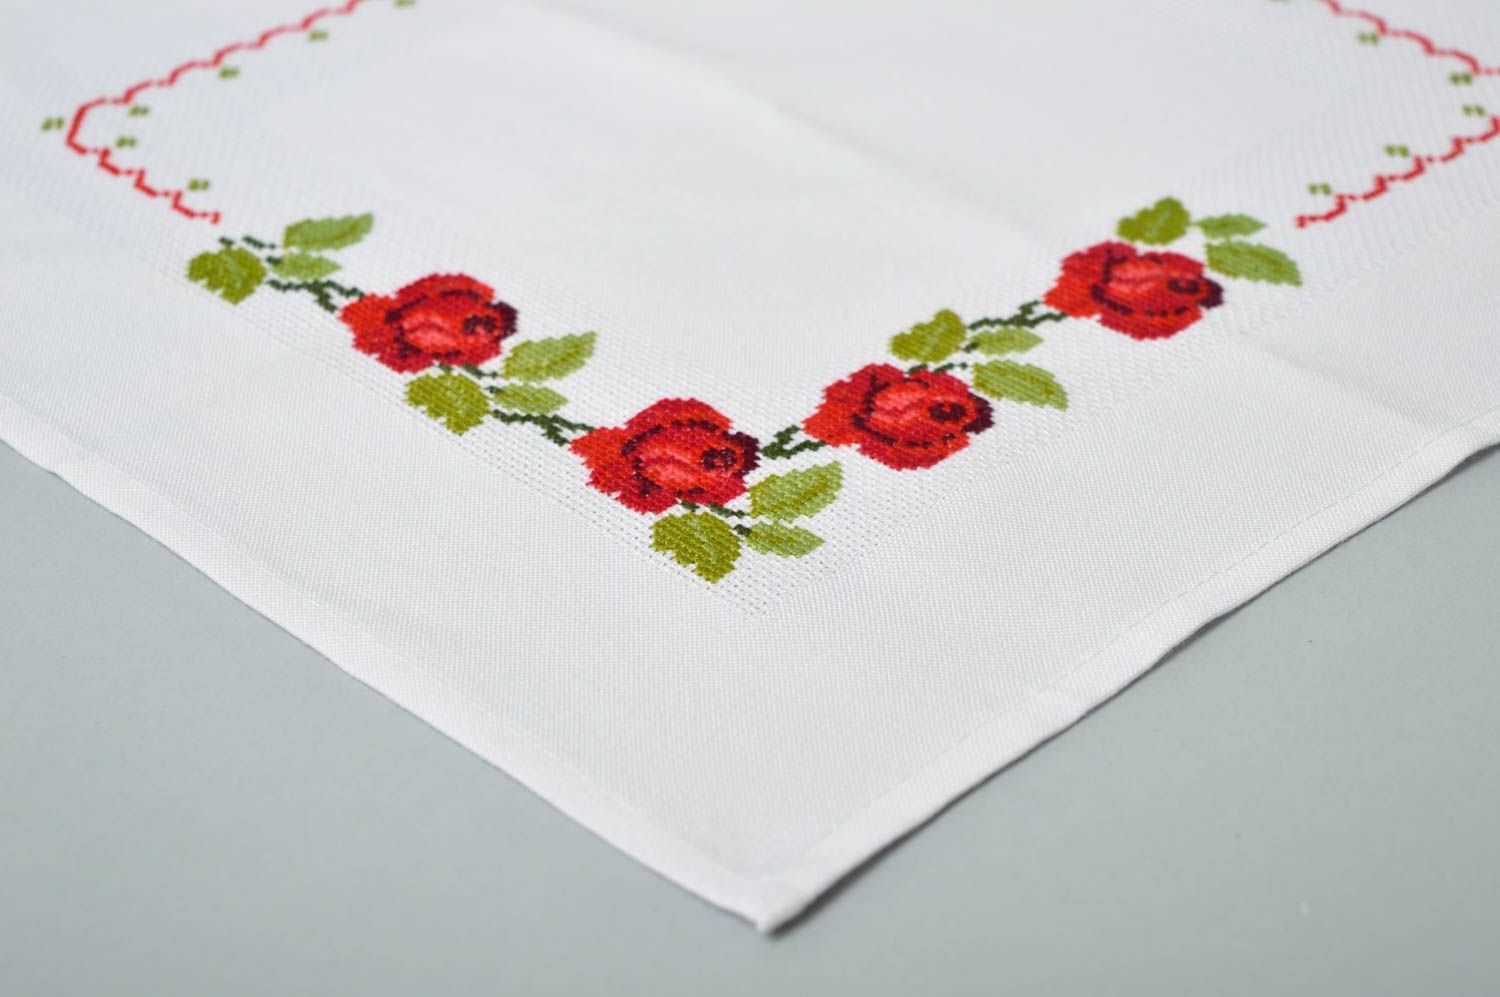 Handmade cute unusual napkin table decor ideas beautiful embroidered napkin photo 3